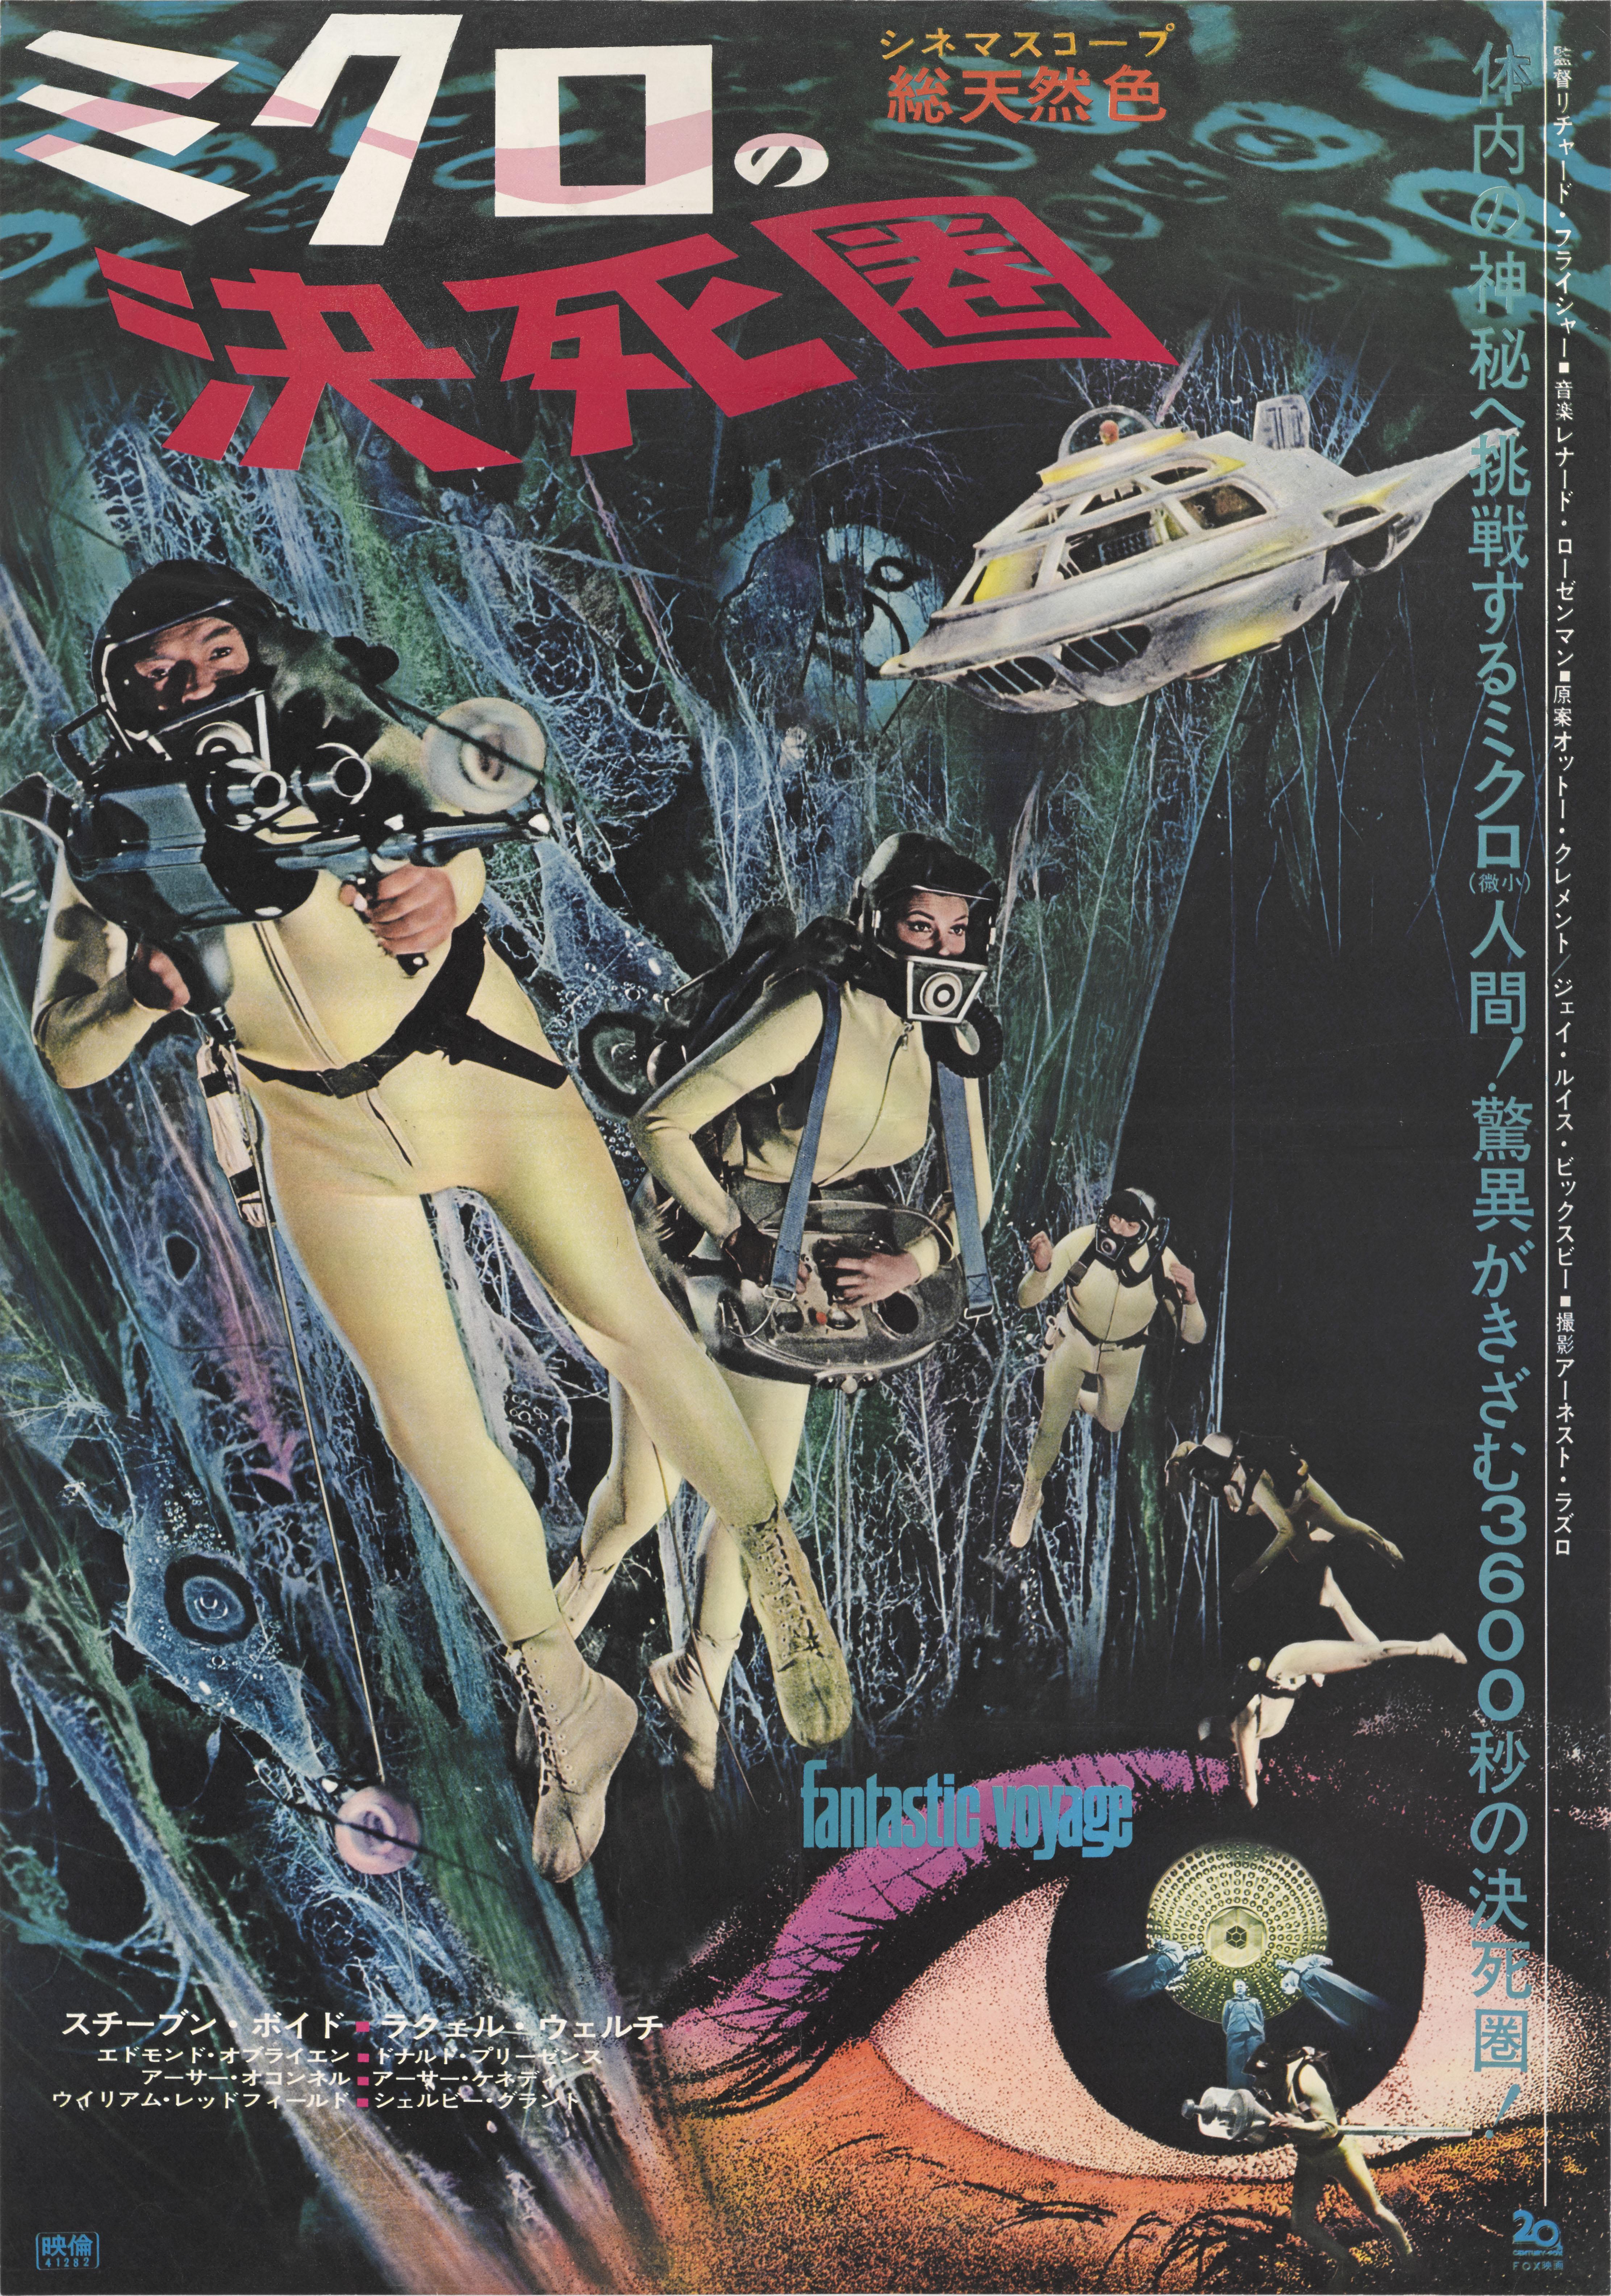 Originales japanisches Filmplakat für den Science-Fiction-Film von 1966 unter der Regie von Richard Fleischer und mit Stephen Boyd und Raquel Welch in den Hauptrollen. Das fabelhafte Kunstwerk ist einzigartig für das japanische Poster.
Dieses